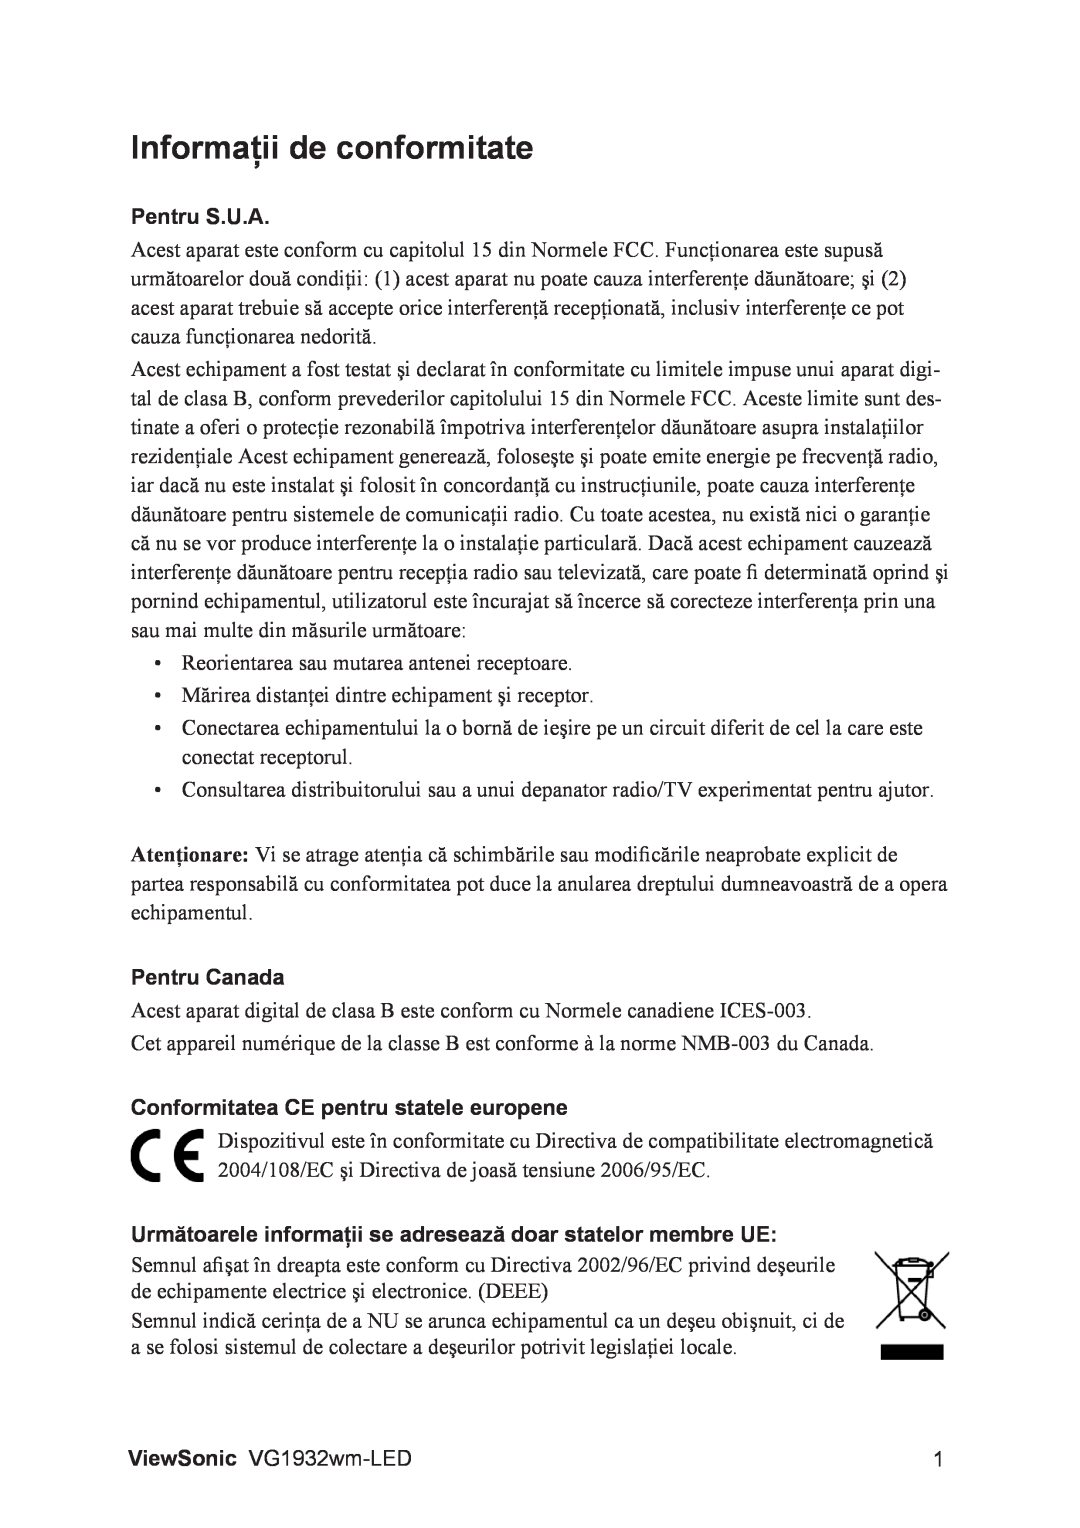 ViewSonic VG1932WM-LED Informaţii de conformitate, Pentru S.U.A, Pentru Canada, Conformitatea CE pentru statele europene 